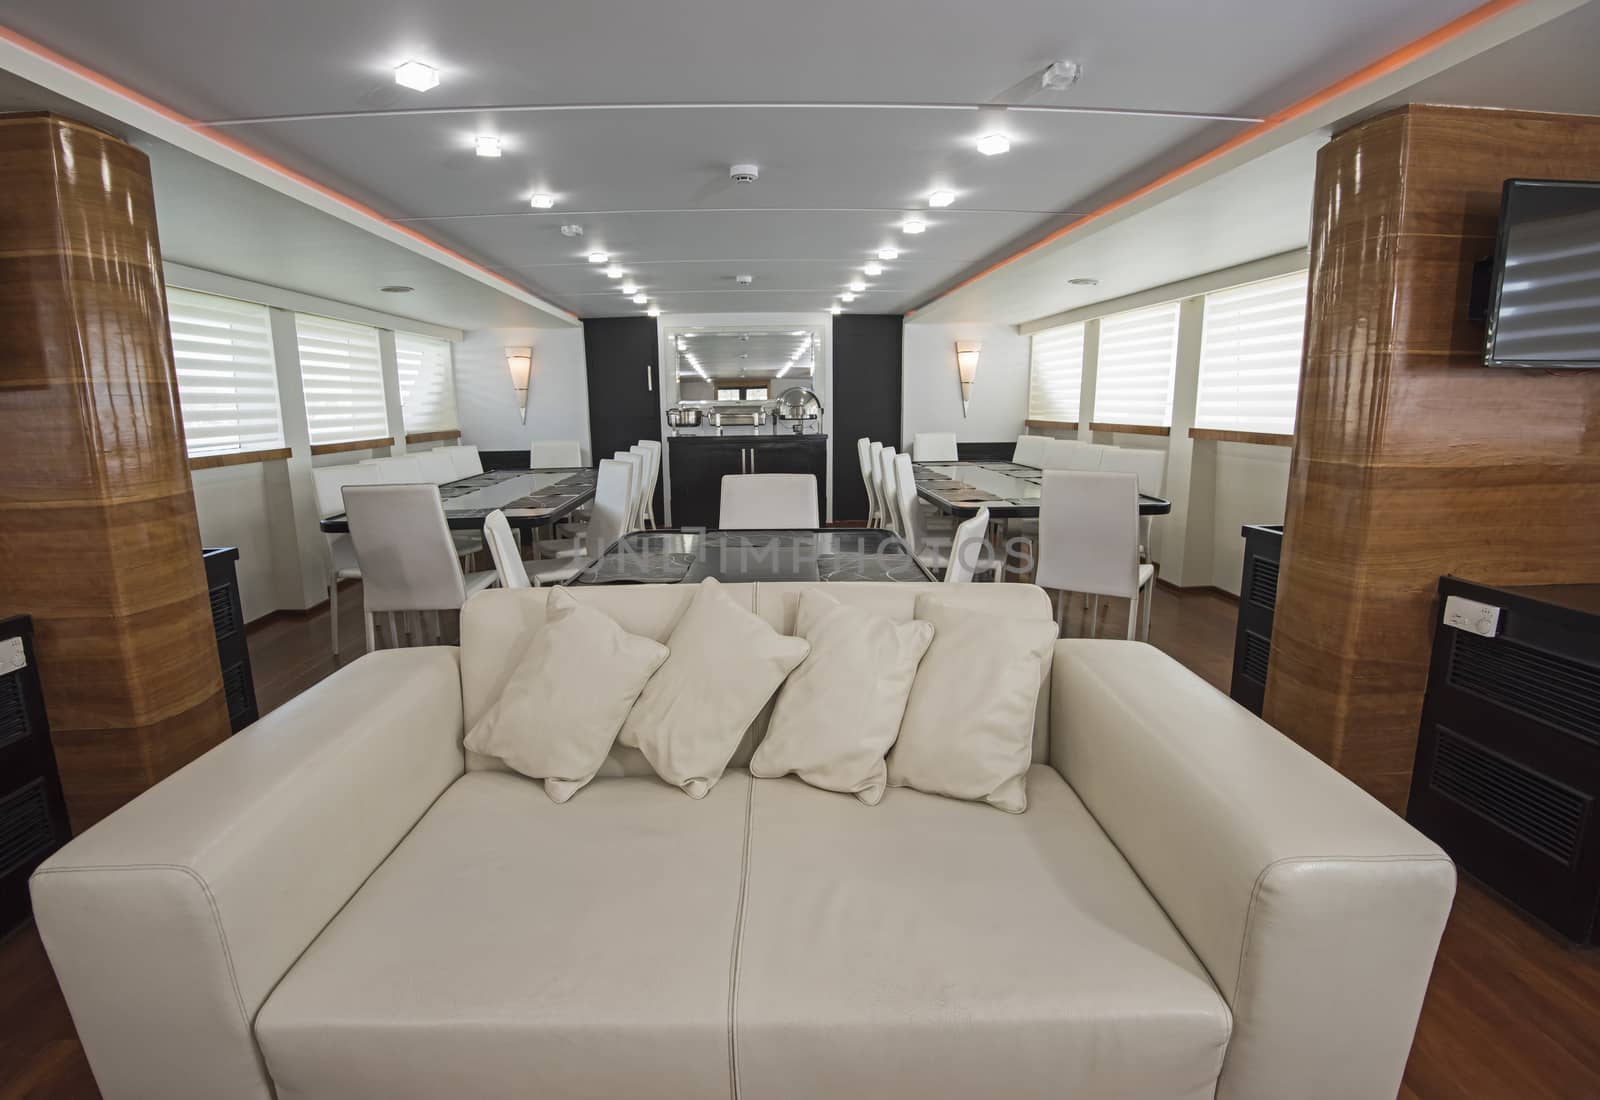 Interior of large salon area of luxury motor yacht by paulvinten